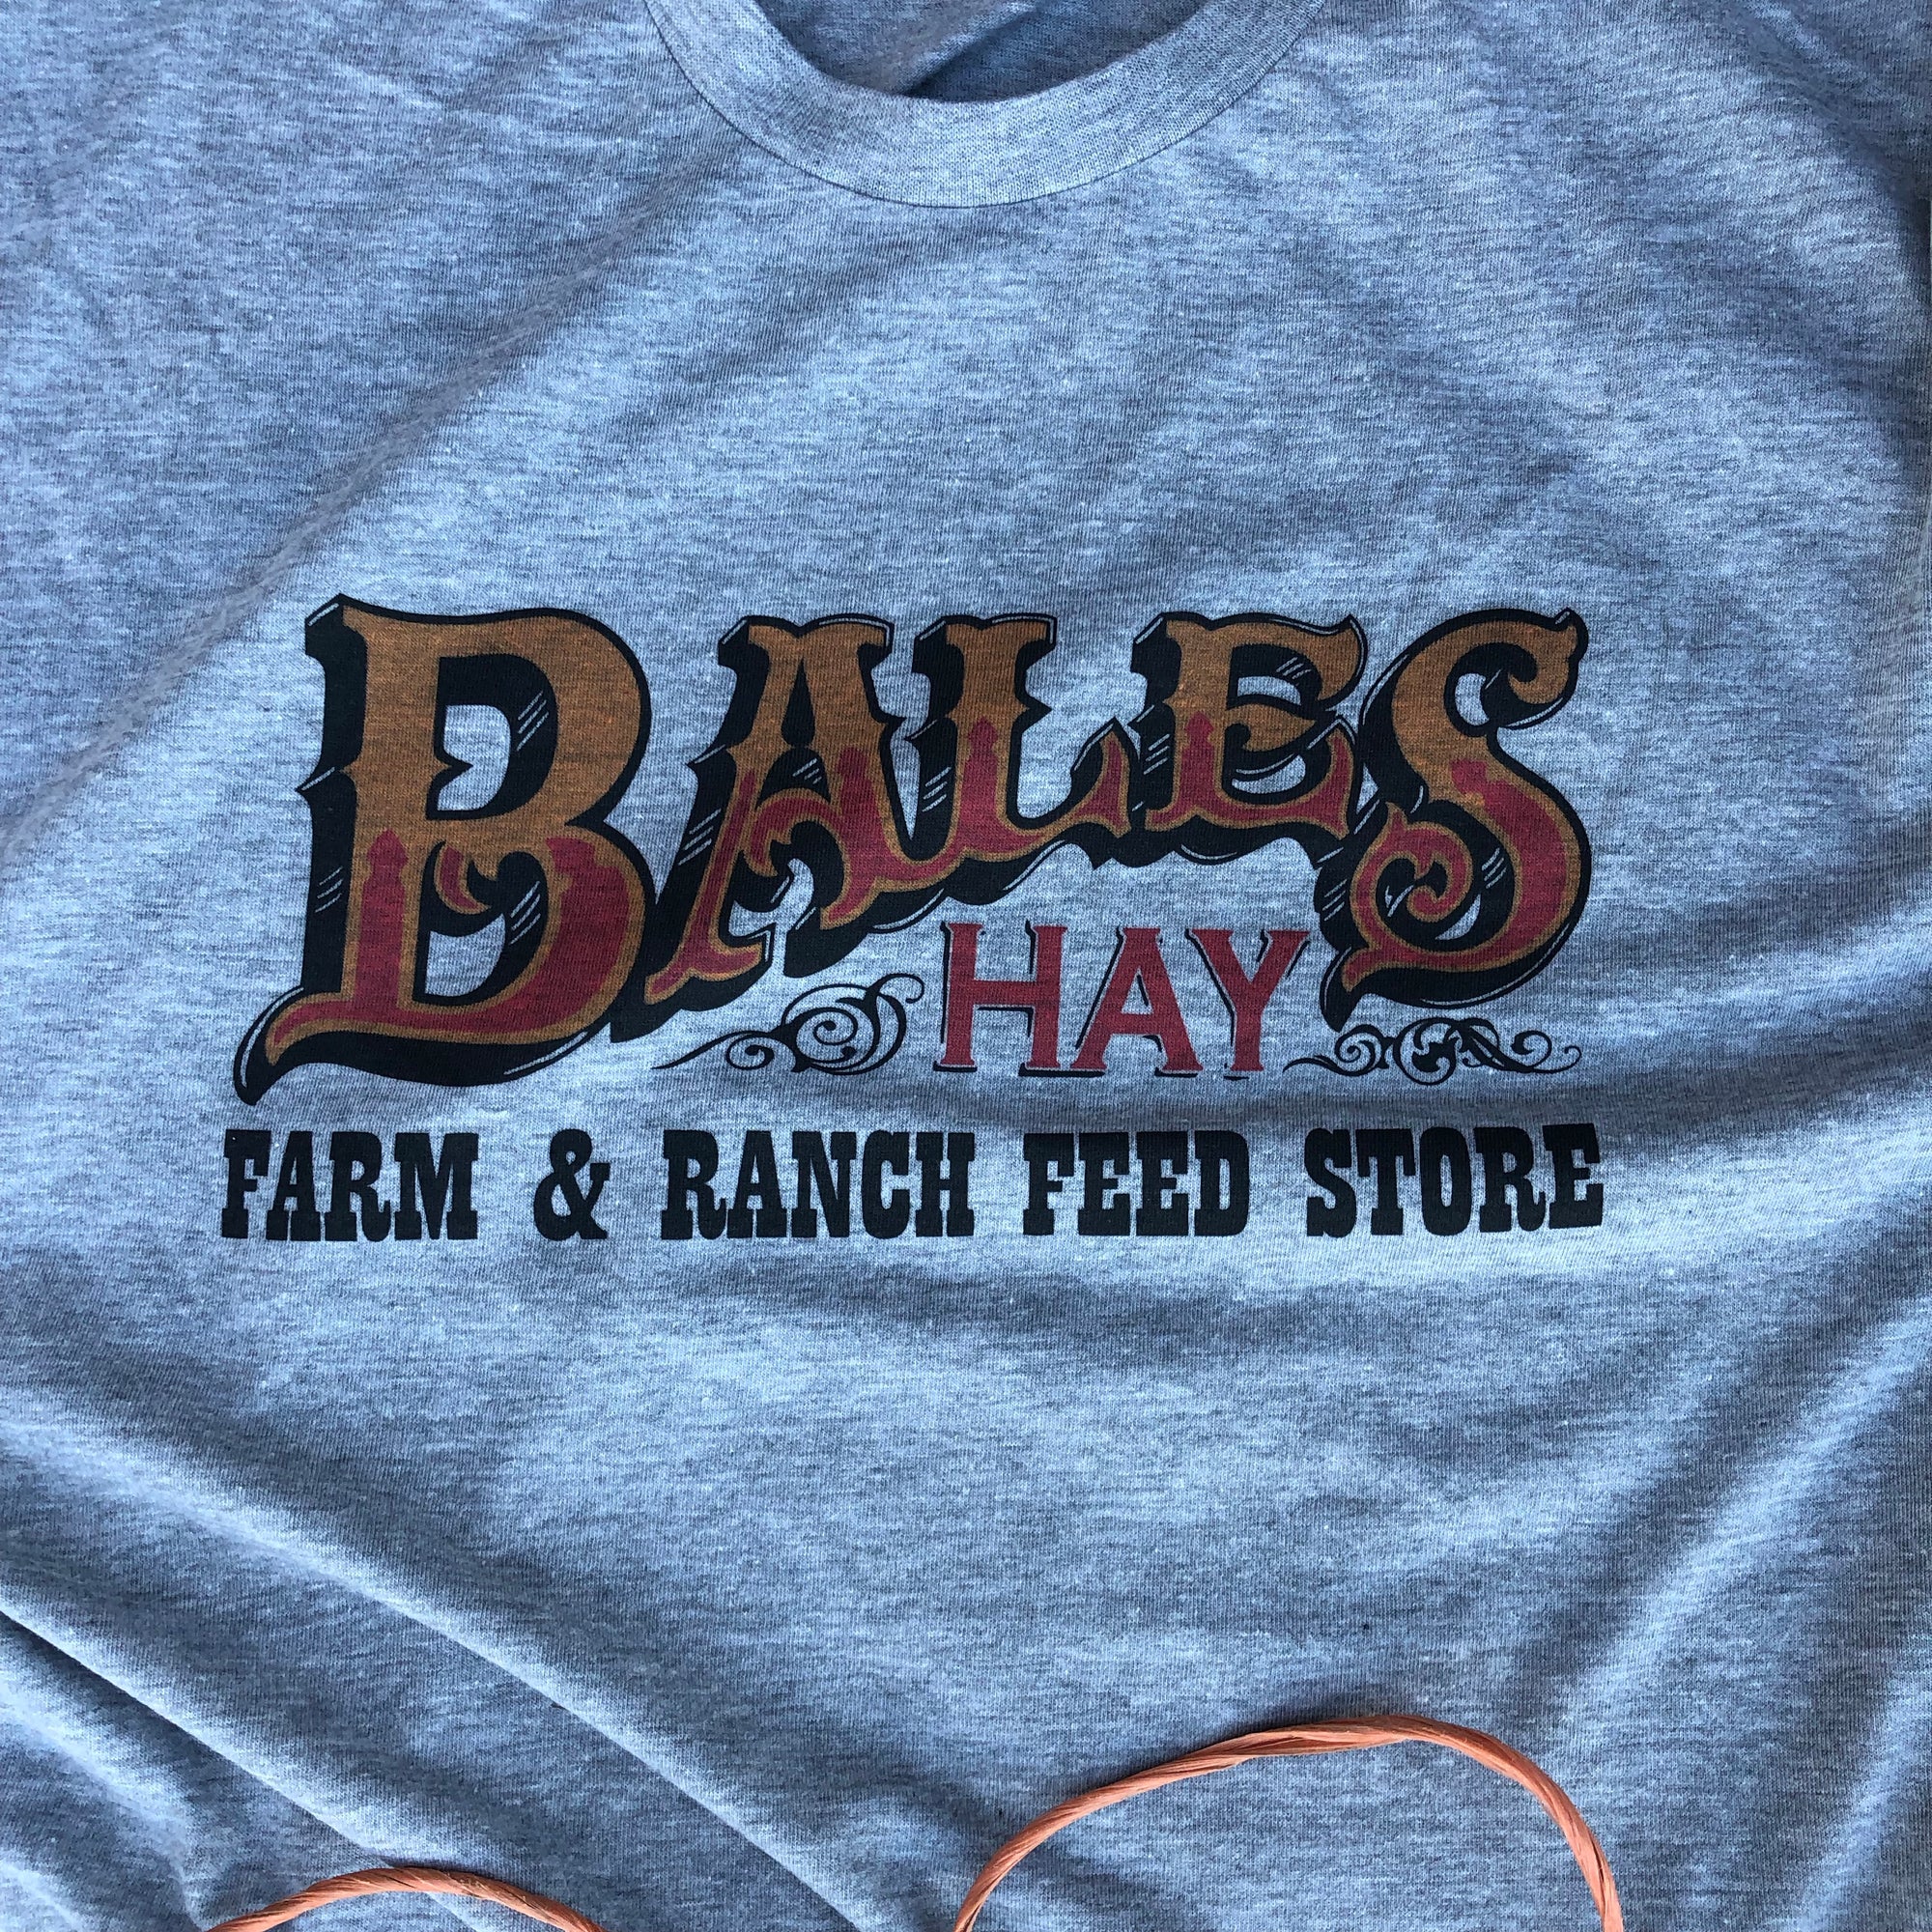 Bales Logo Shirt